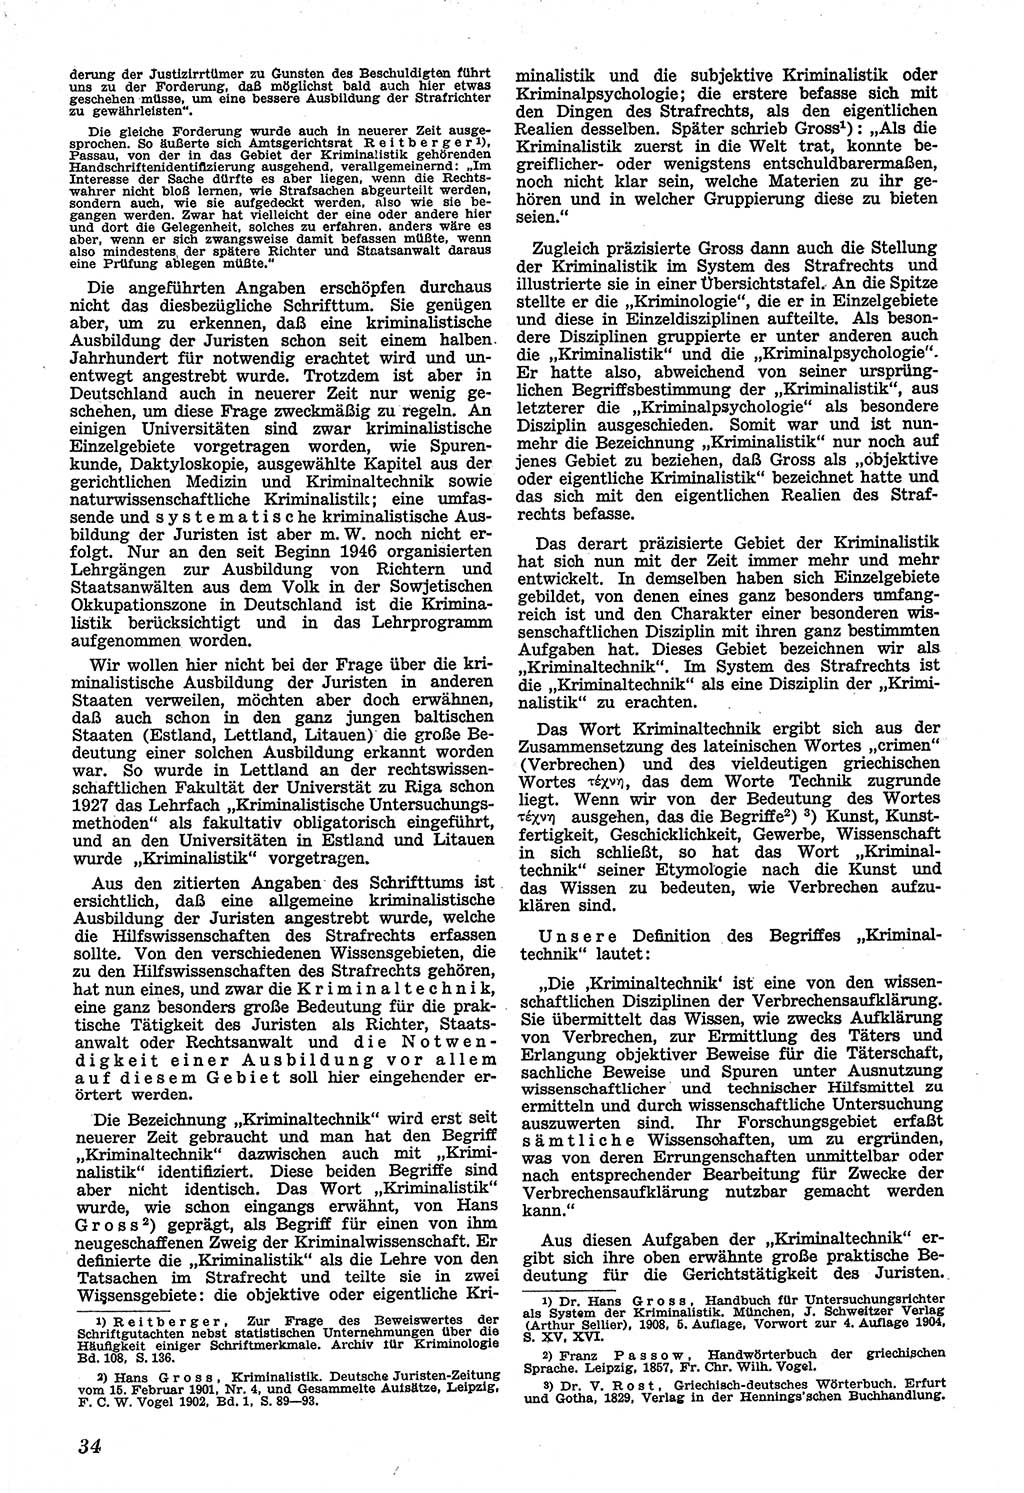 Neue Justiz (NJ), Zeitschrift für Recht und Rechtswissenschaft [Sowjetische Besatzungszone (SBZ) Deutschland], 1. Jahrgang 1947, Seite 34 (NJ SBZ Dtl. 1947, S. 34)